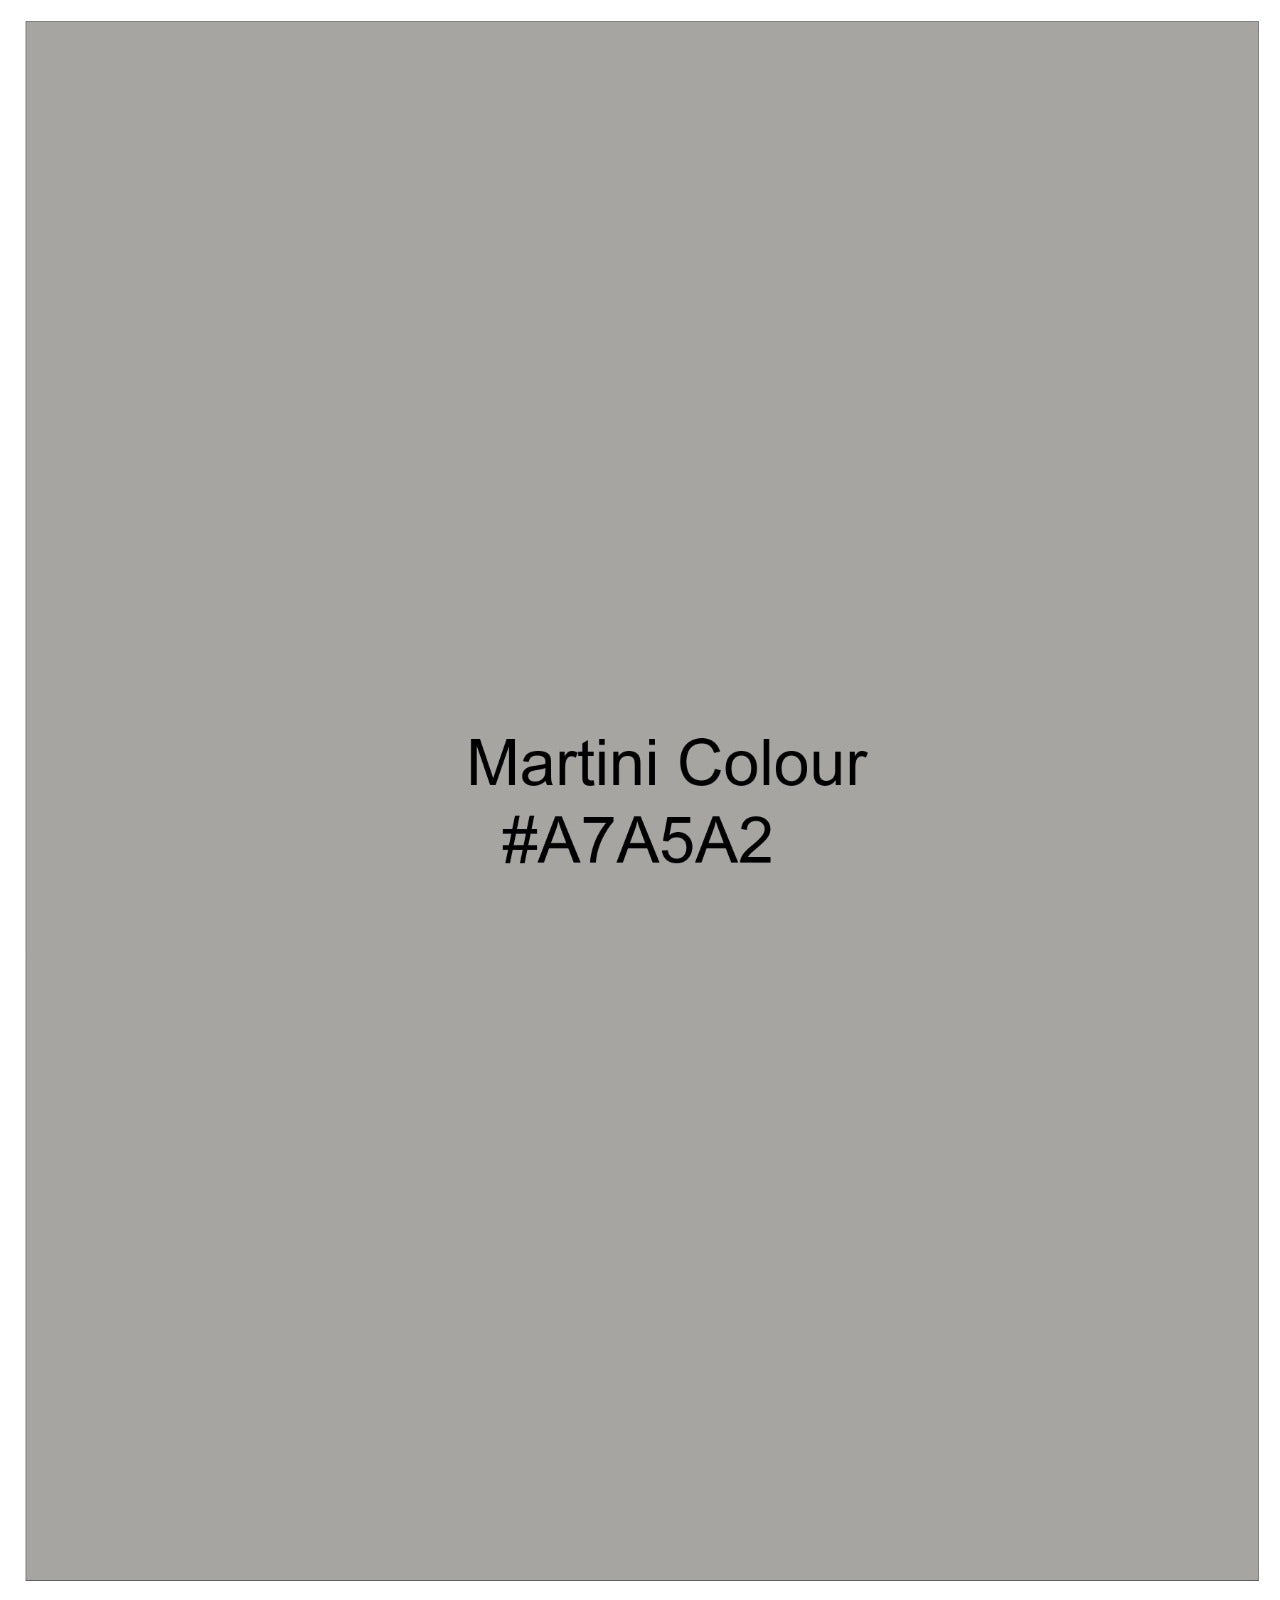 Martini Gray Bandhgala Premium Cotton Stretchable Traveler Suit ST2669-BG-36, ST2669-BG-38, ST2669-BG-40, ST2669-BG-42, ST2669-BG-44, ST2669-BG-46, ST2669-BG-48, ST2669-BG-50, ST2669-BG-52, ST2669-BG-54, ST2669-BG-56, ST2669-BG-58, ST2669-BG-60Martini Gray Bandhgala Premium Cotton Stretchable Traveler Suit ST2669-BG-36, ST2669-BG-38, ST2669-BG-40, ST2669-BG-42, ST2669-BG-44, ST2669-BG-46, ST2669-BG-48, ST2669-BG-50, ST2669-BG-52, ST2669-BG-54, ST2669-BG-56, ST2669-BG-58, ST2669-BG-60